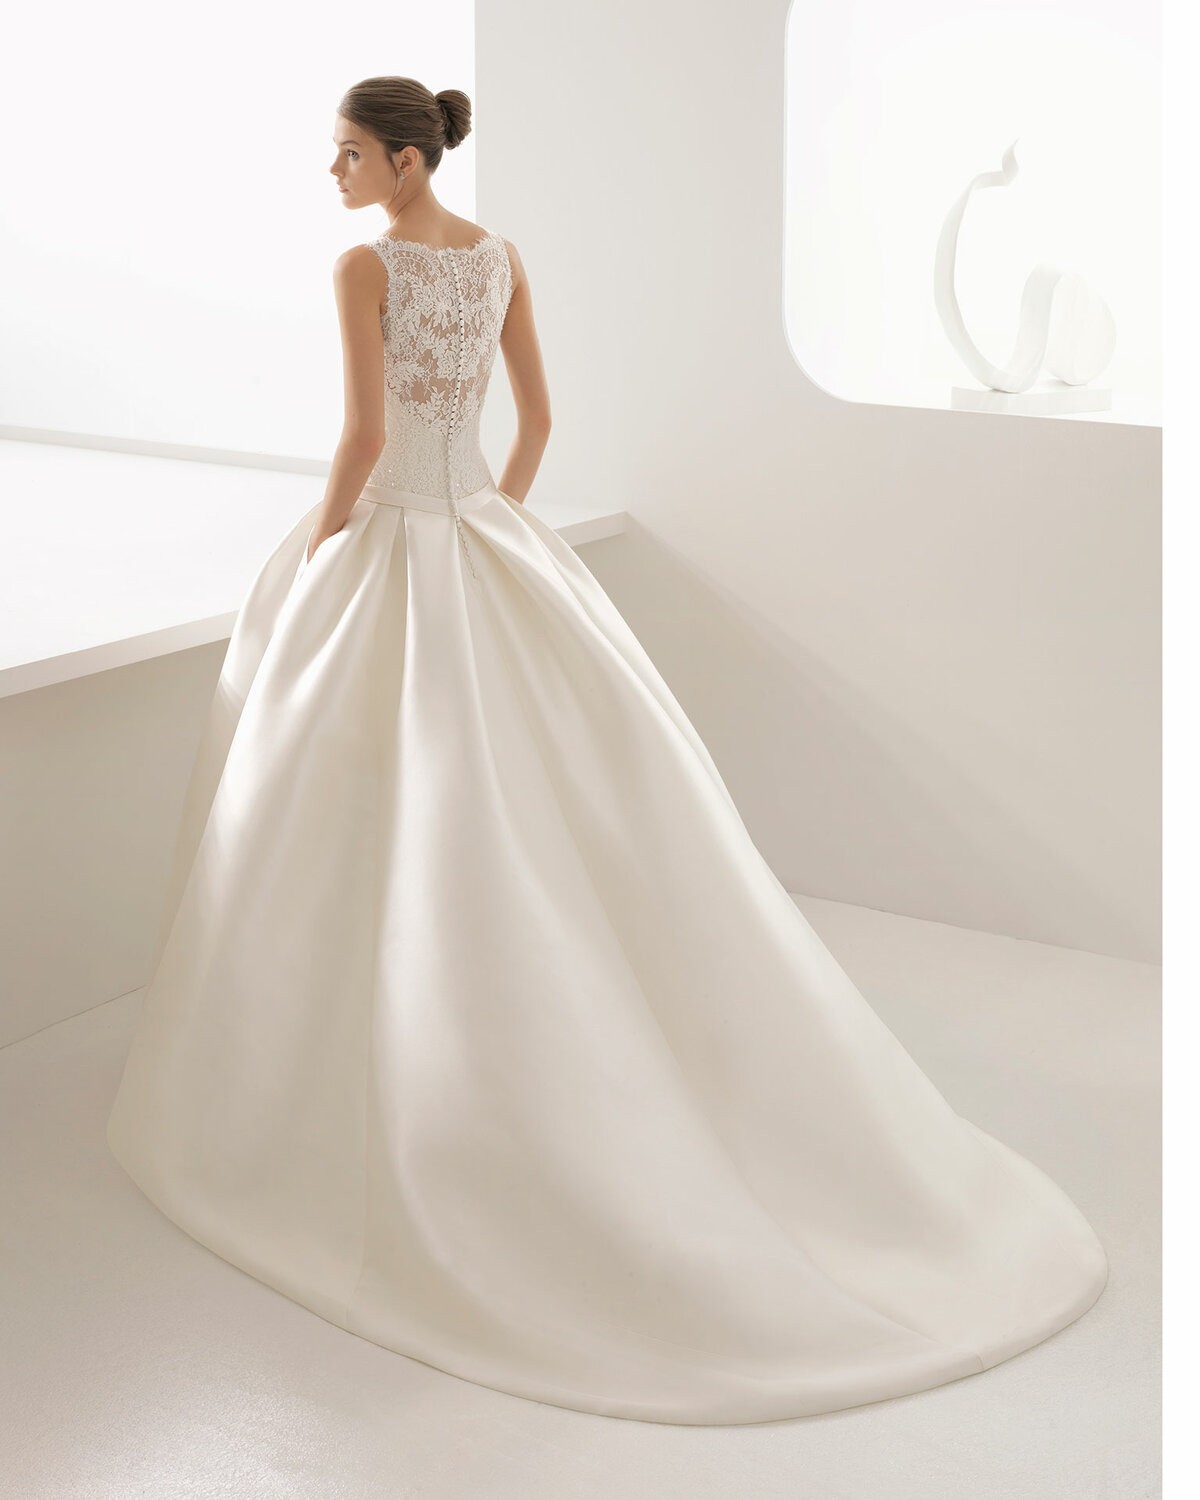 ARIZONA - abito da sposa collezione 2020 - Rosa Clarà